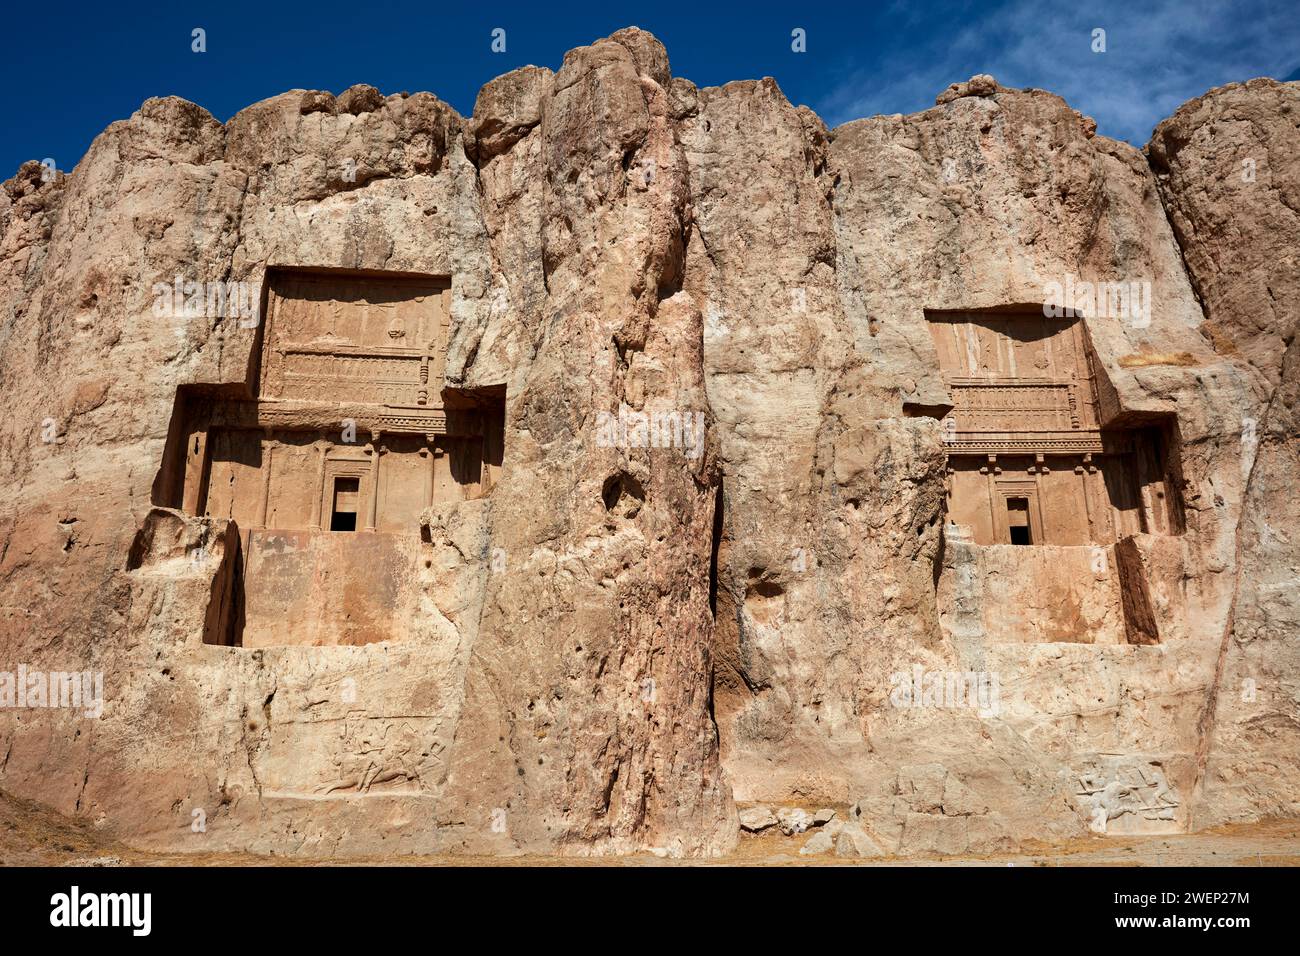 Tombes taillées dans la roche de deux rois achéméniens de l'Empire perse - Artaxerxès I (à droite) et Darius II (à gauche). Nécropole Naqsh-e Rostam près de Persépolis, Iran Banque D'Images